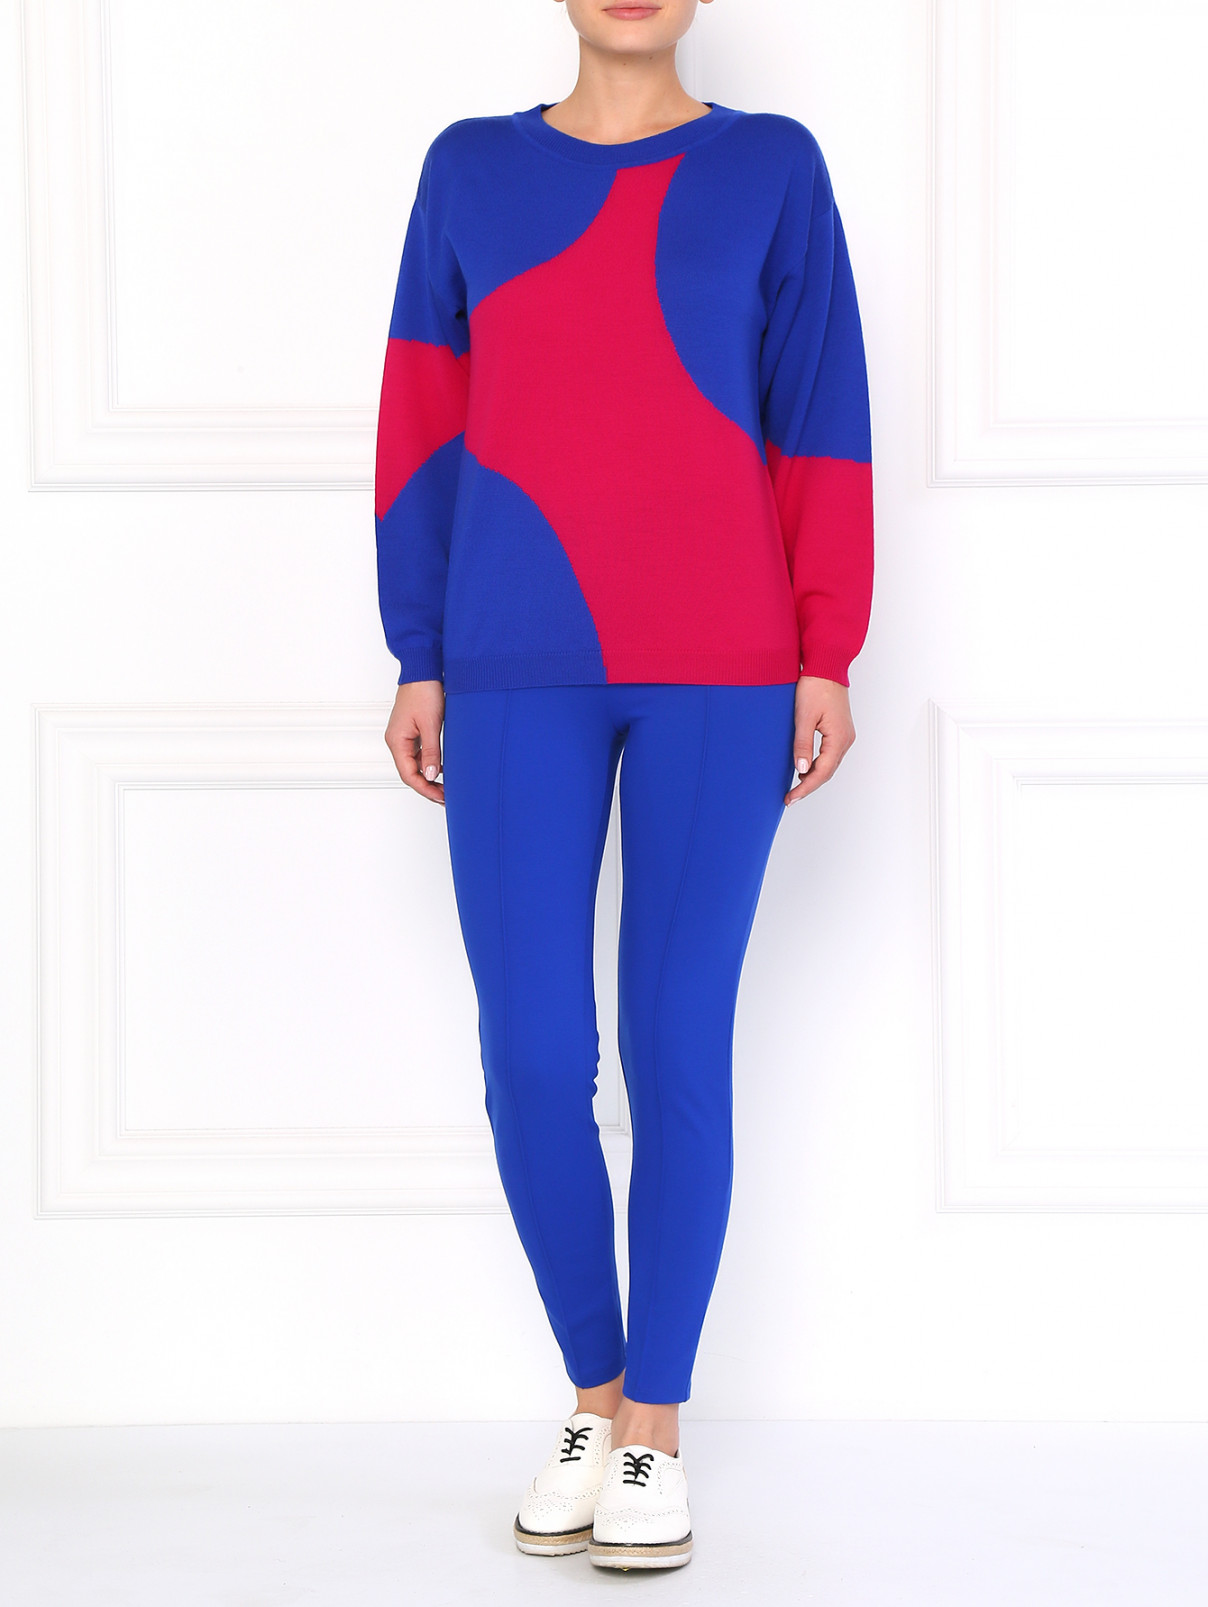 Трикотажные узкие брюки Moschino Boutique  –  Модель Общий вид  – Цвет:  Синий